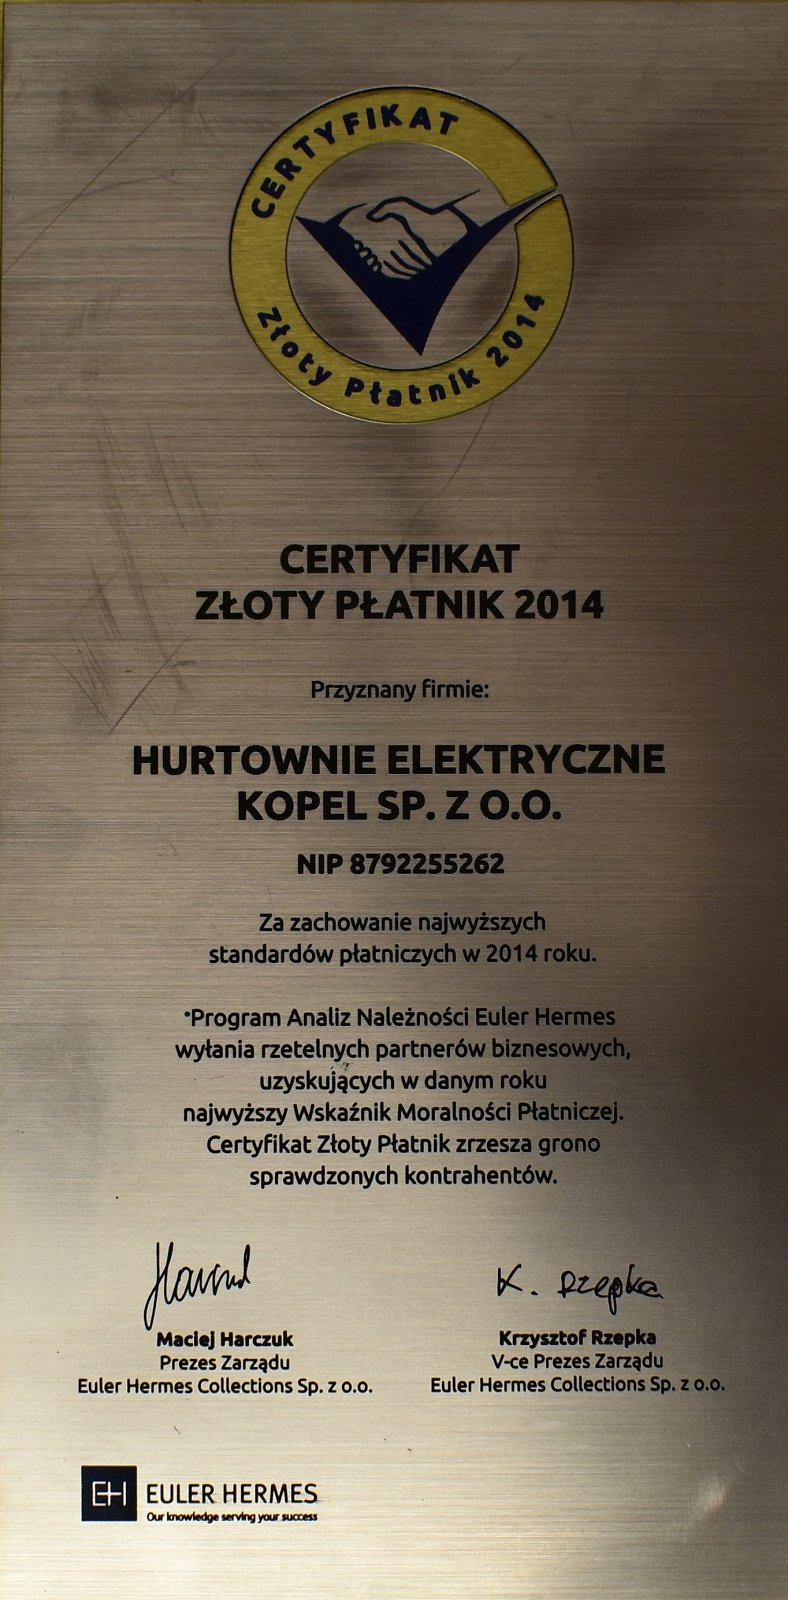 Certyfikat Złoty Płatnik 2014